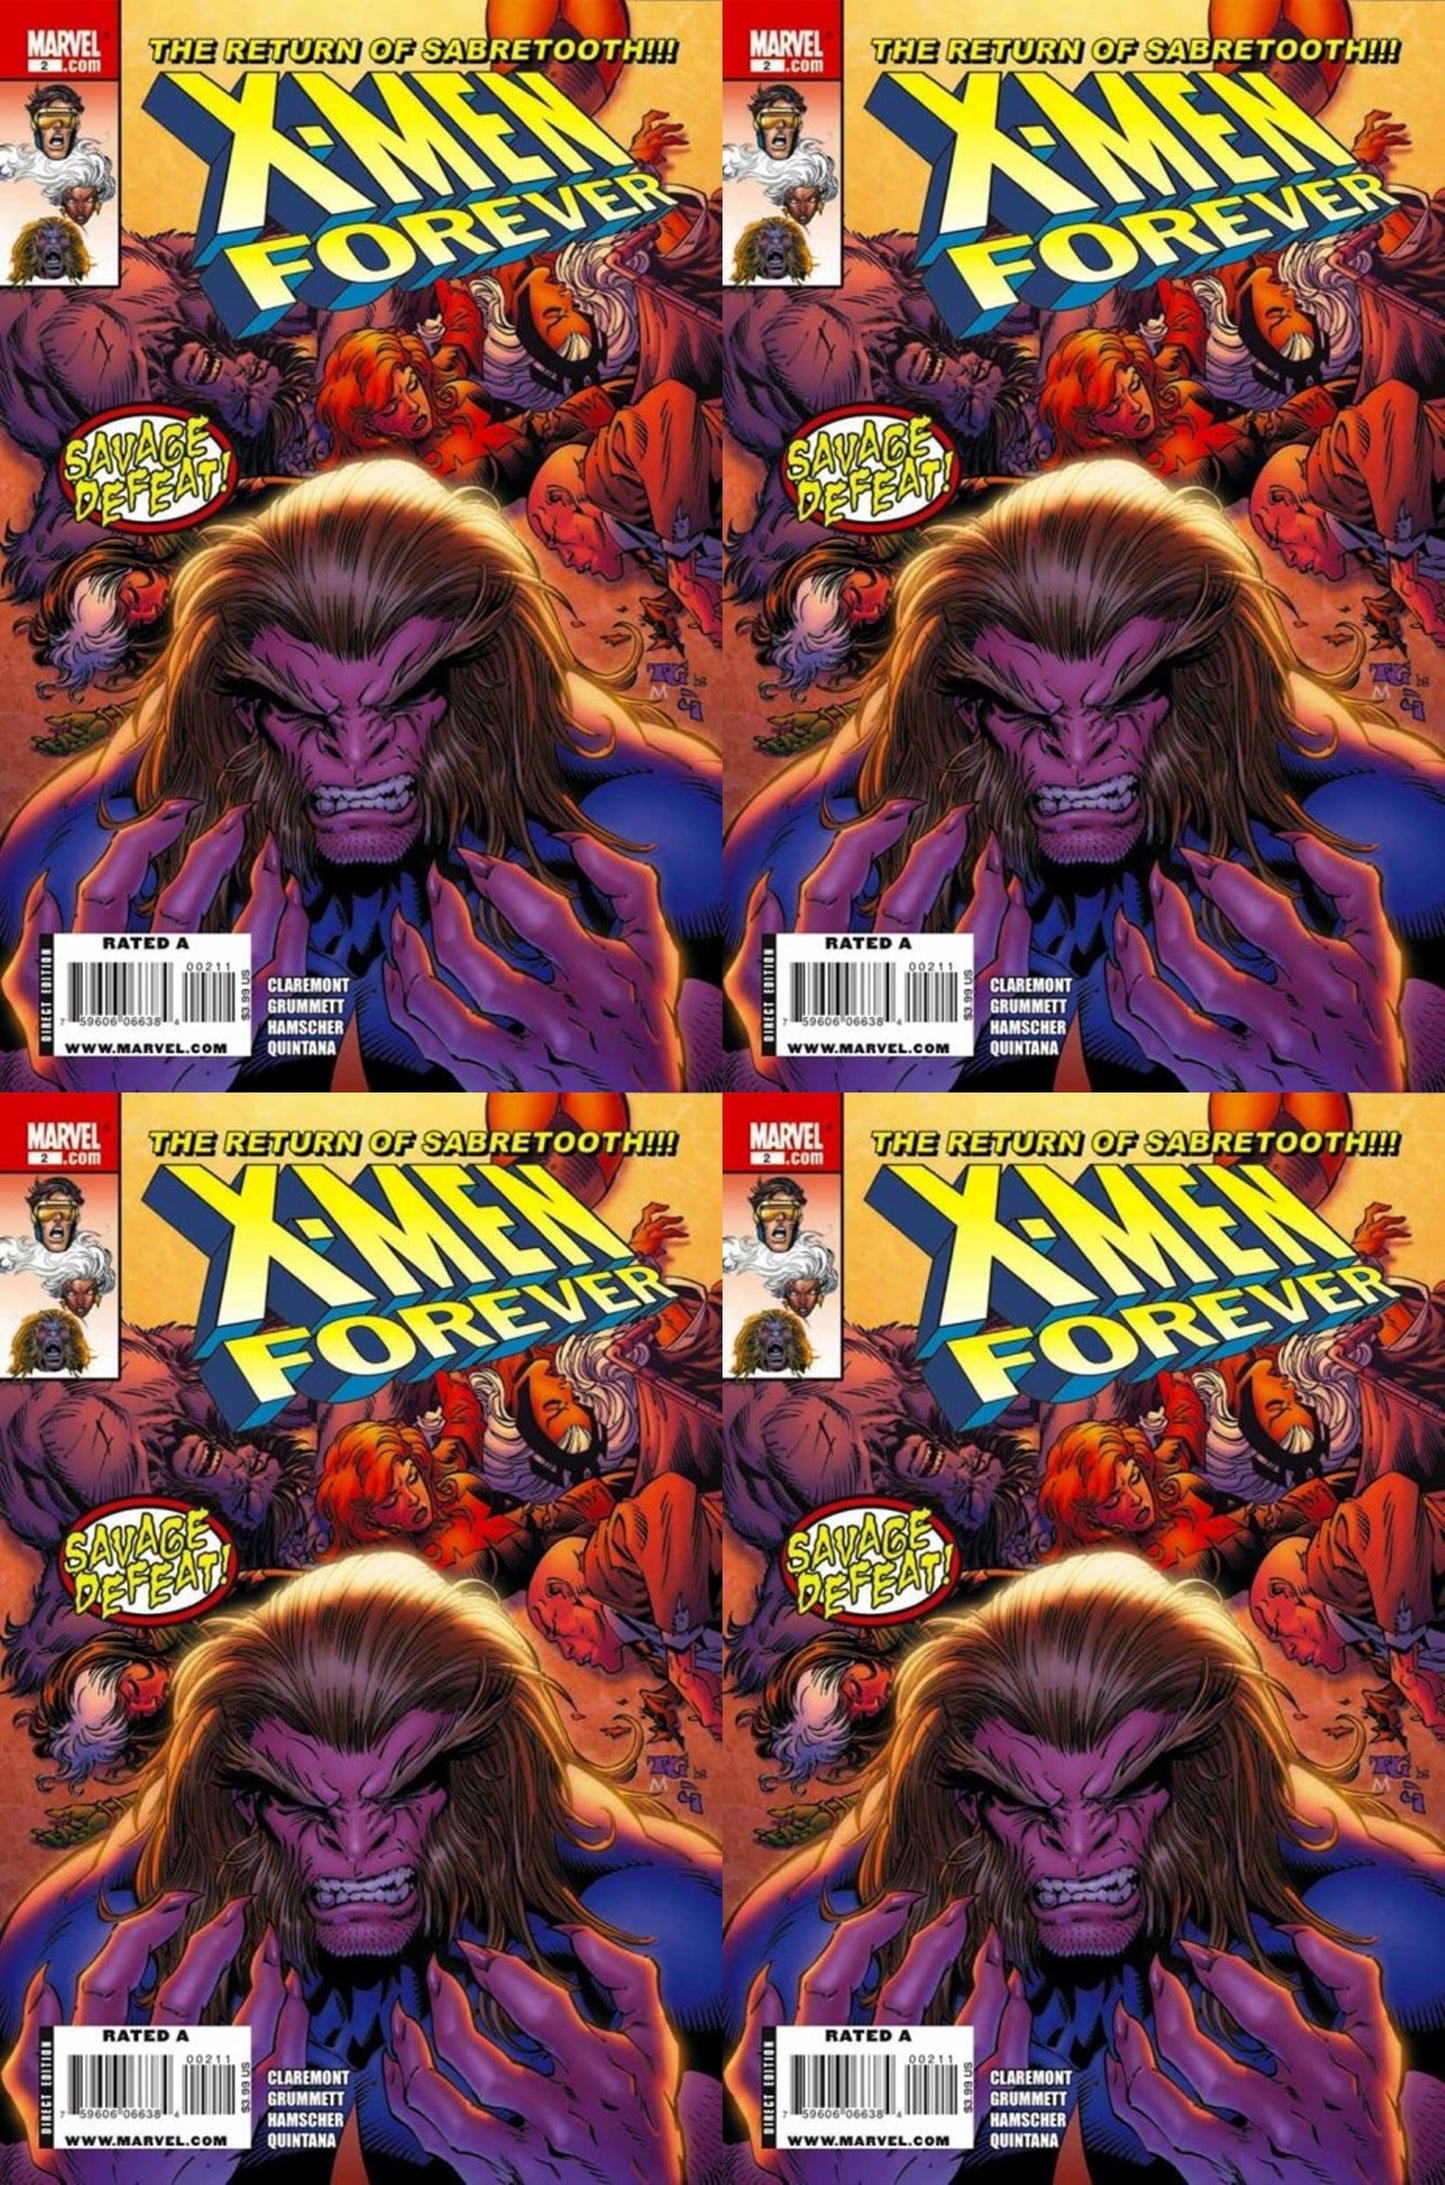 X-Men Forever #2 Volume 2 (2009-2010) Marvel - 4 Comics